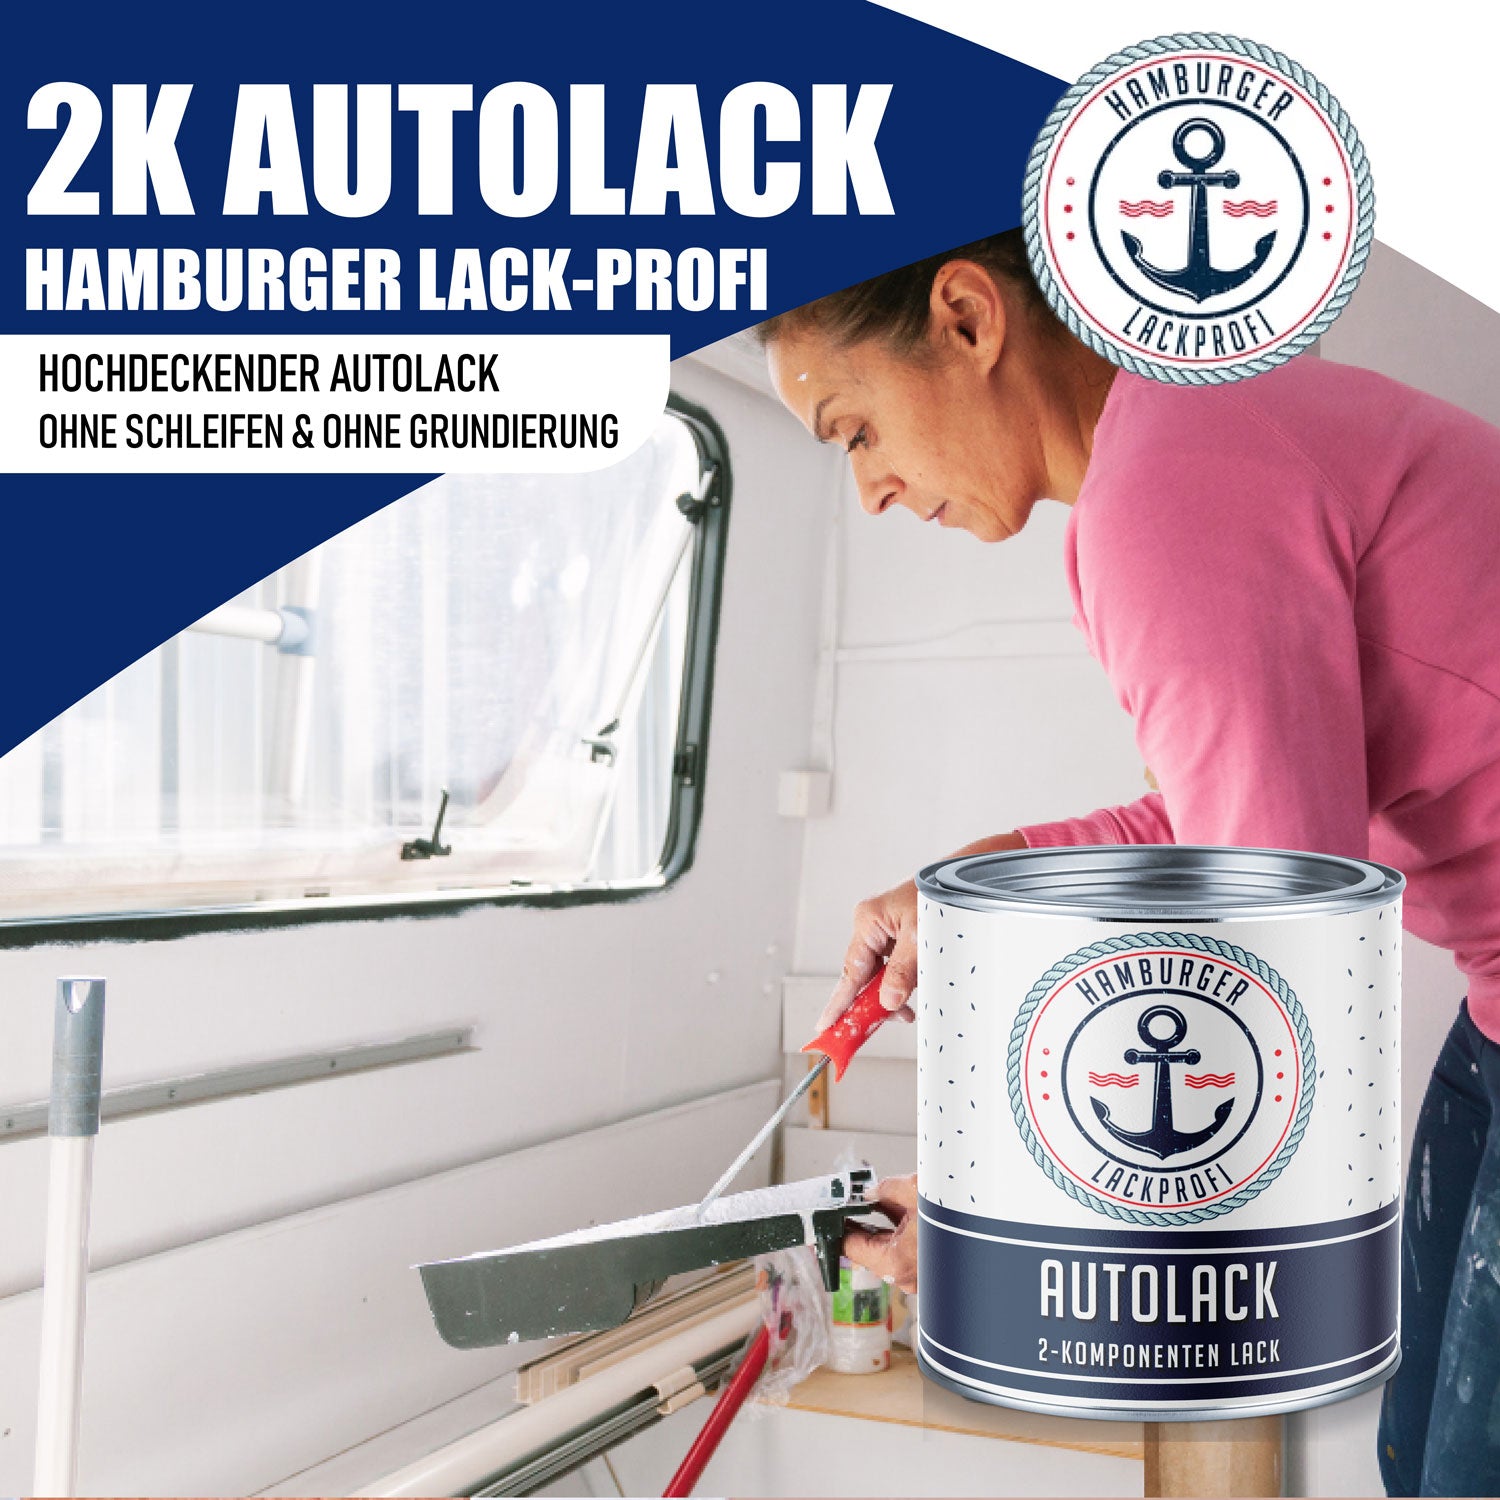 Hamburger Lack-Profi 2K Autolack Achatgrau RAL 7038 - hochdeckend & rostschützend